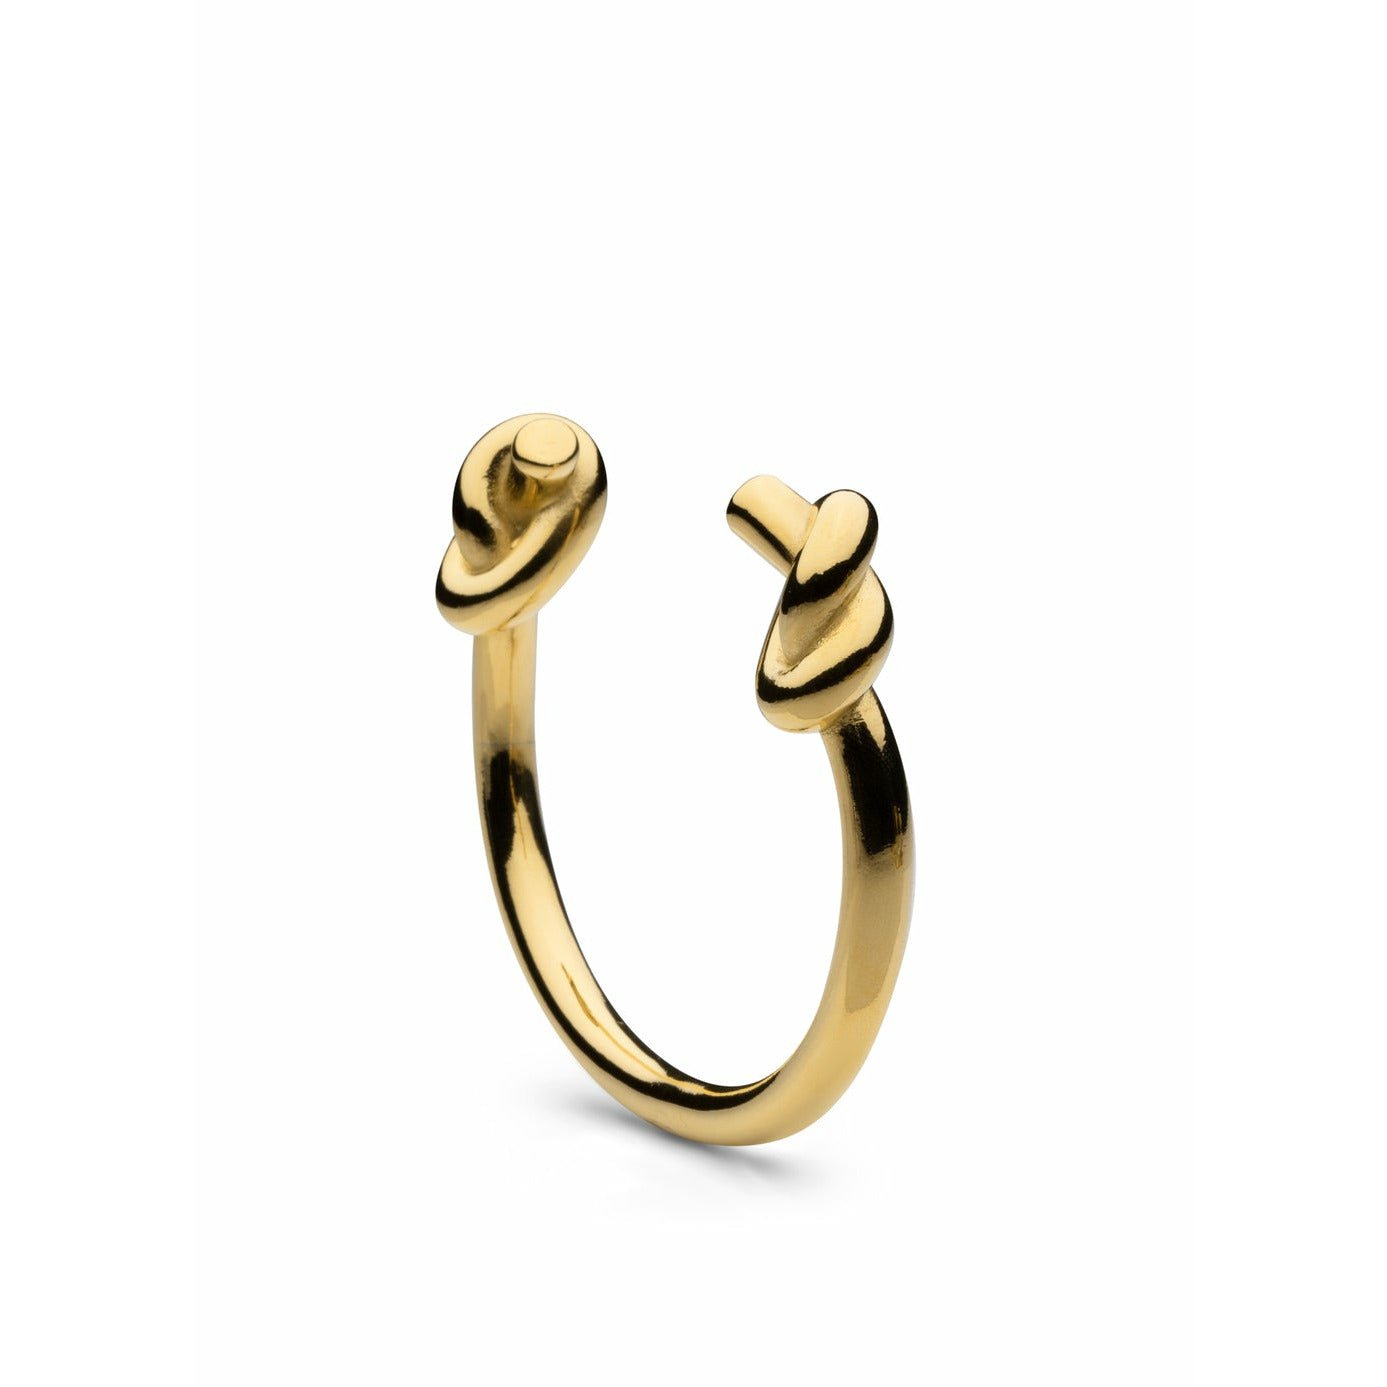 Skultuna Massive Knot Bracelet Small Gold Plated, ø14,5 Cm